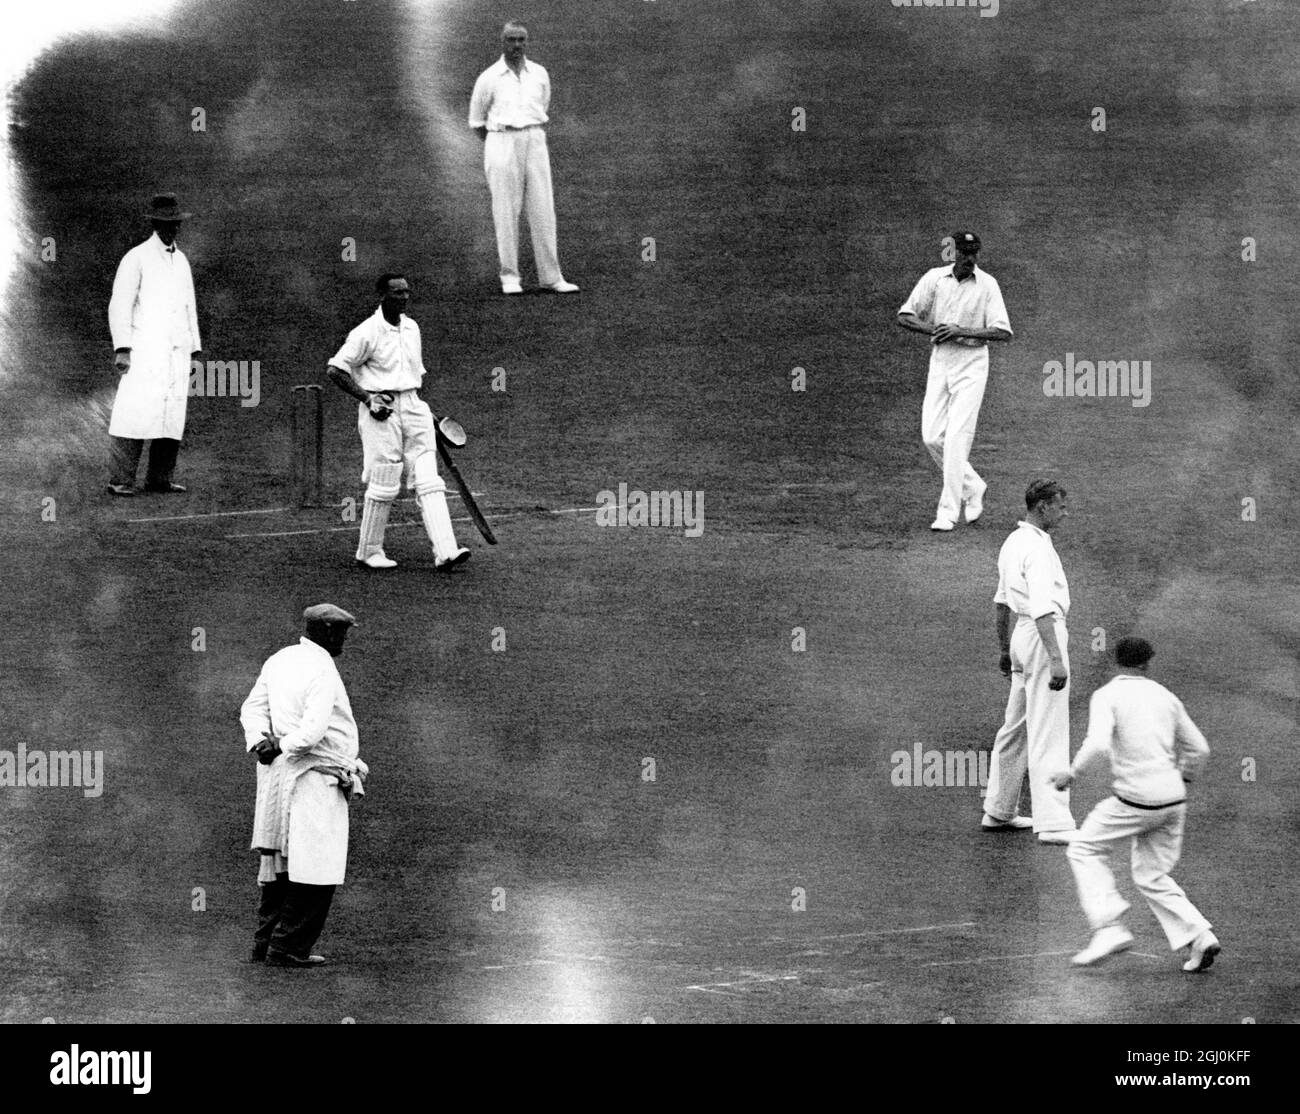 County cricket, 1930. Surrey contre Middlesex à l'Oval. J. B.Hobbs applaudit après avoir battu le record de W. G. Grace de 54,896 courses de cricket de première classe. Banque D'Images